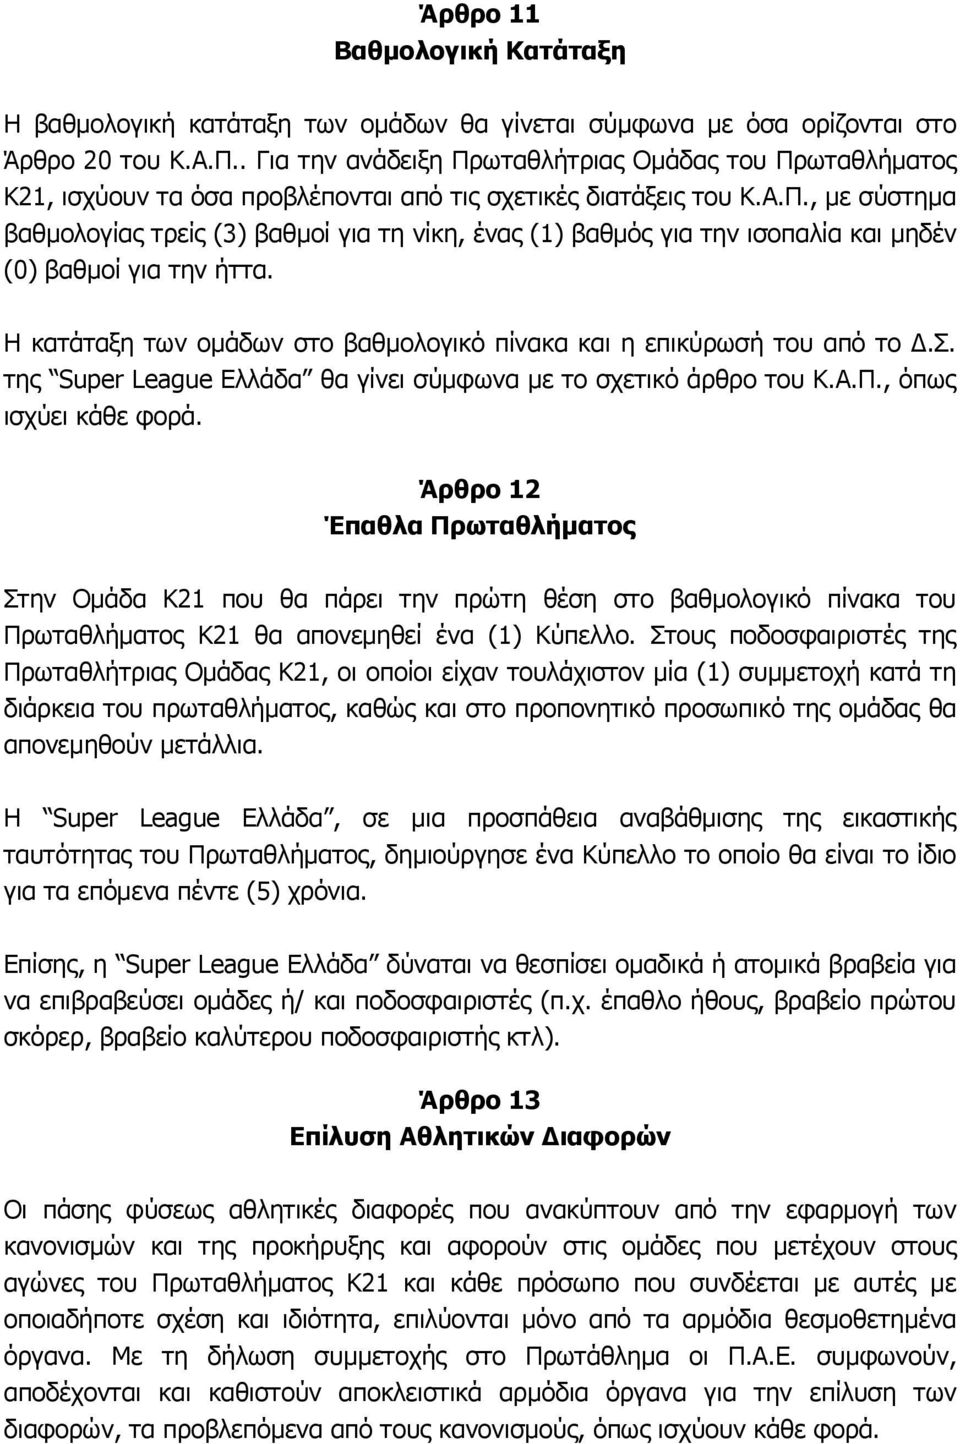 Η κατάταξη των ομάδων στο βαθμολογικό πίνακα και η επικύρωσή του από το Δ.Σ. της Super League Ελλάδα θα γίνει σύμφωνα με το σχετικό άρθρο του Κ.Α.Π., όπως ισχύει κάθε φορά.